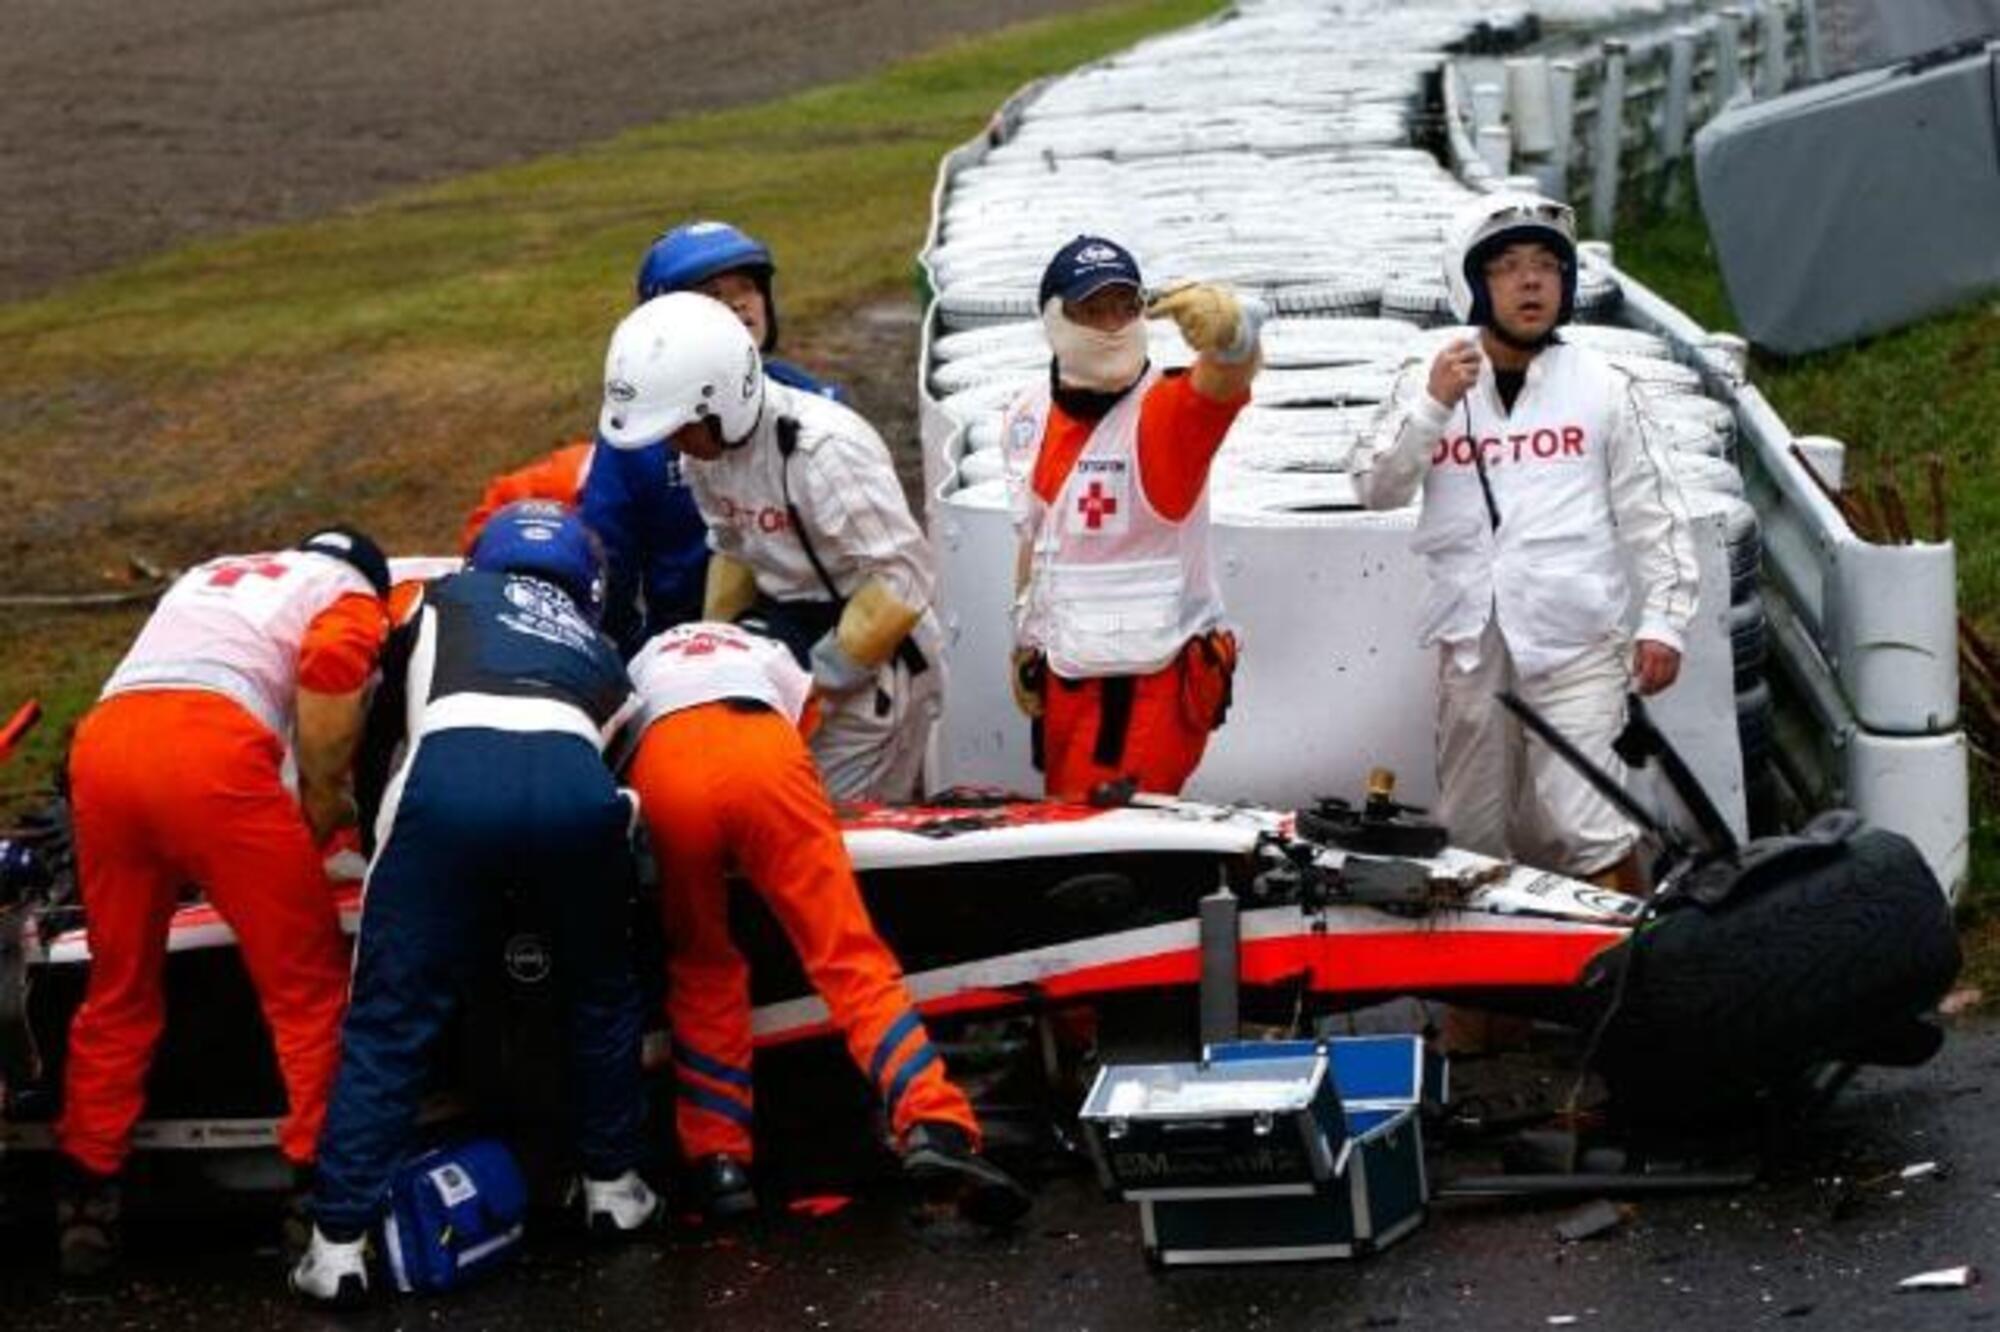 Jules Bianchi incidente Suzuka 2014